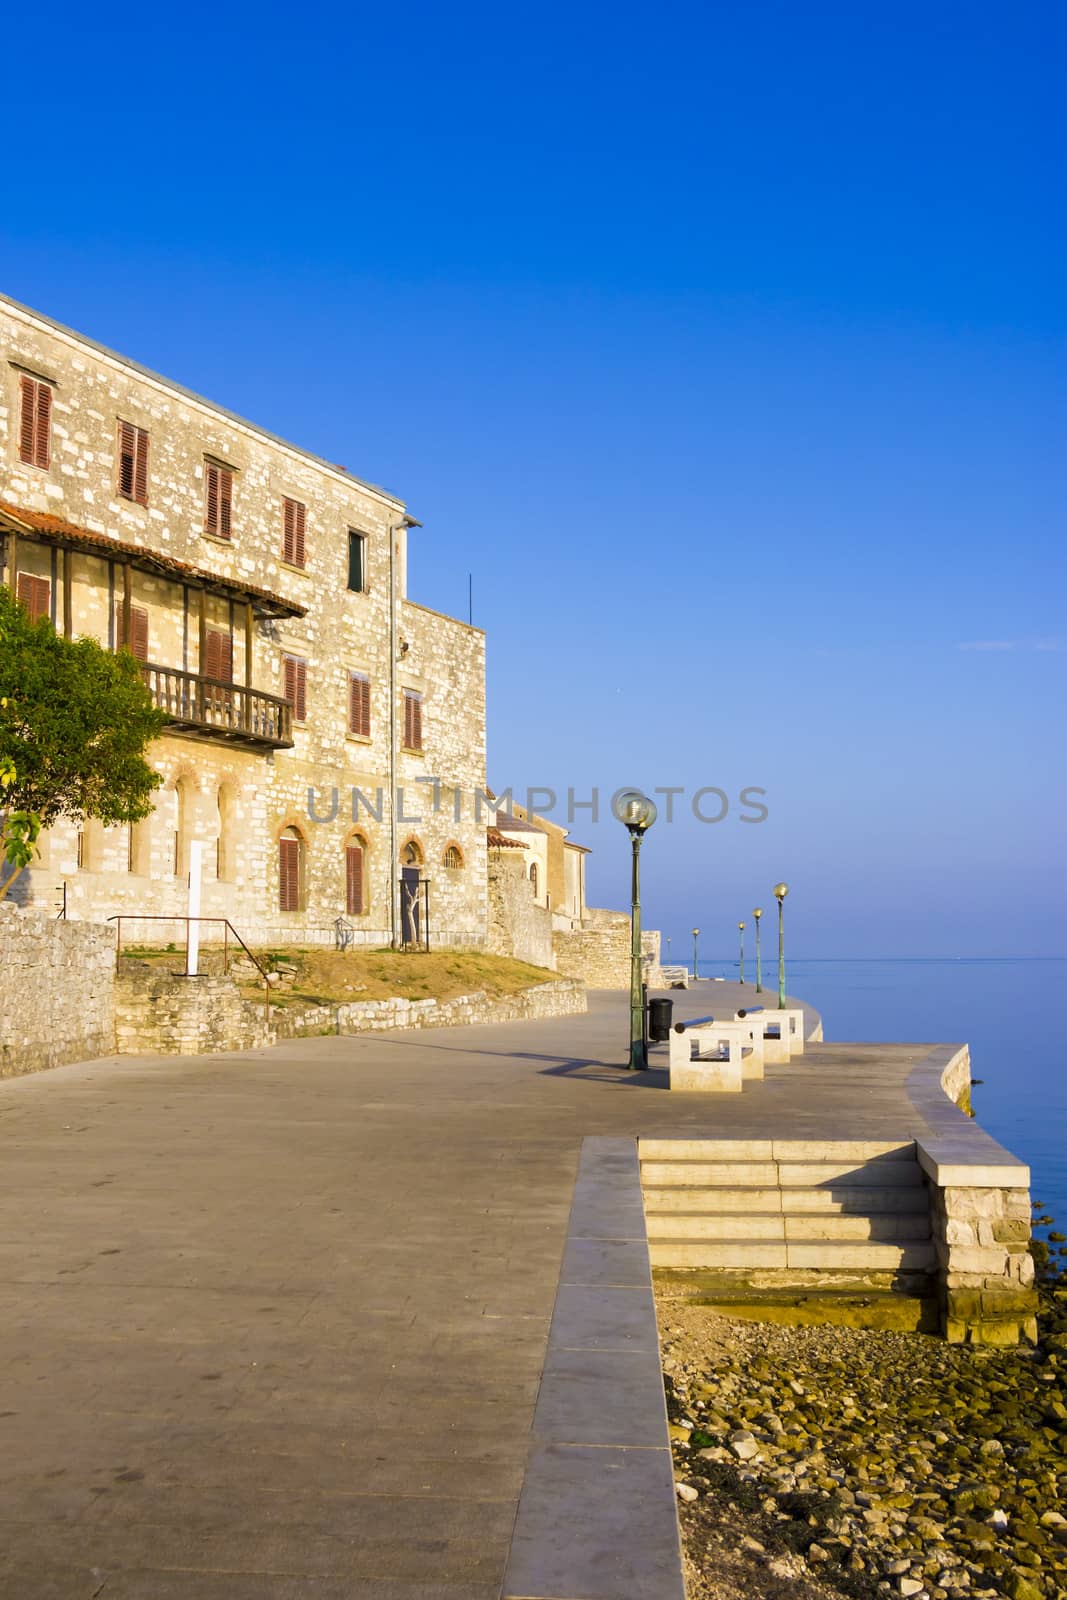 Porec - old Adriatic town in Croatia, Istria region. Popular touristic destination.